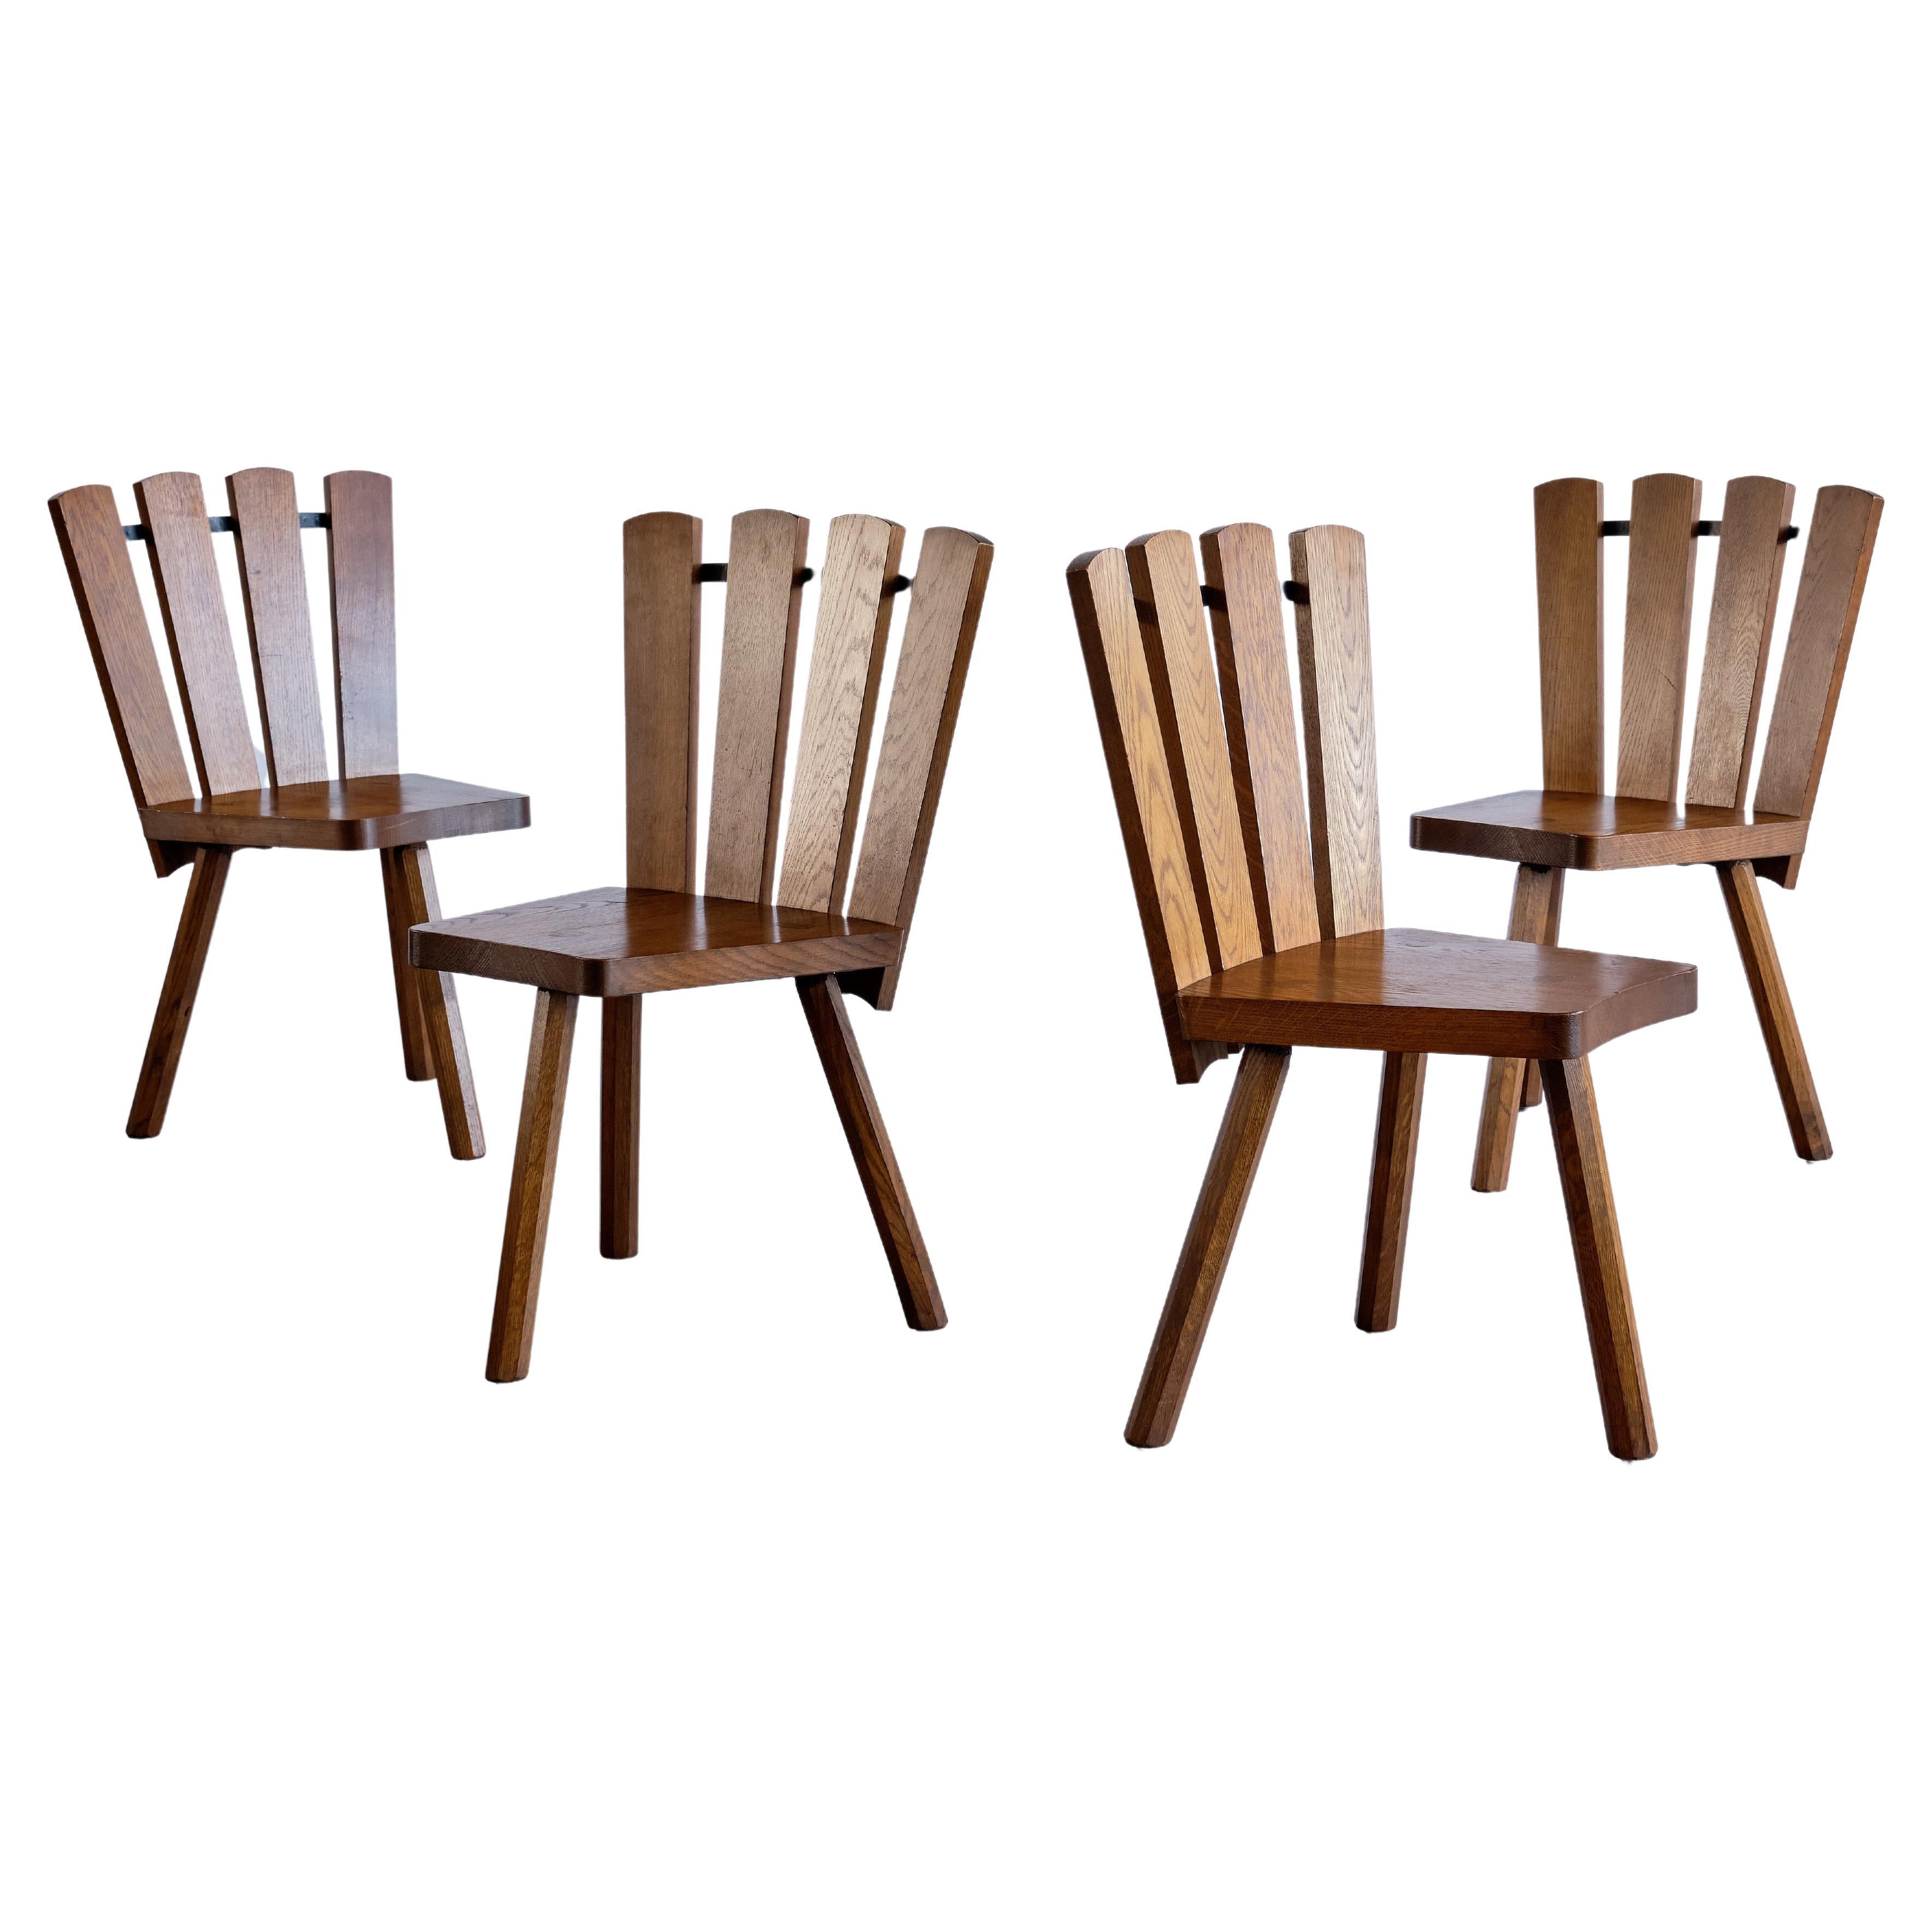 Satz von vier modernen französischen Esszimmerstühlen aus Eichenholz mit fächerförmiger Rückenlehne, 1950er Jahre